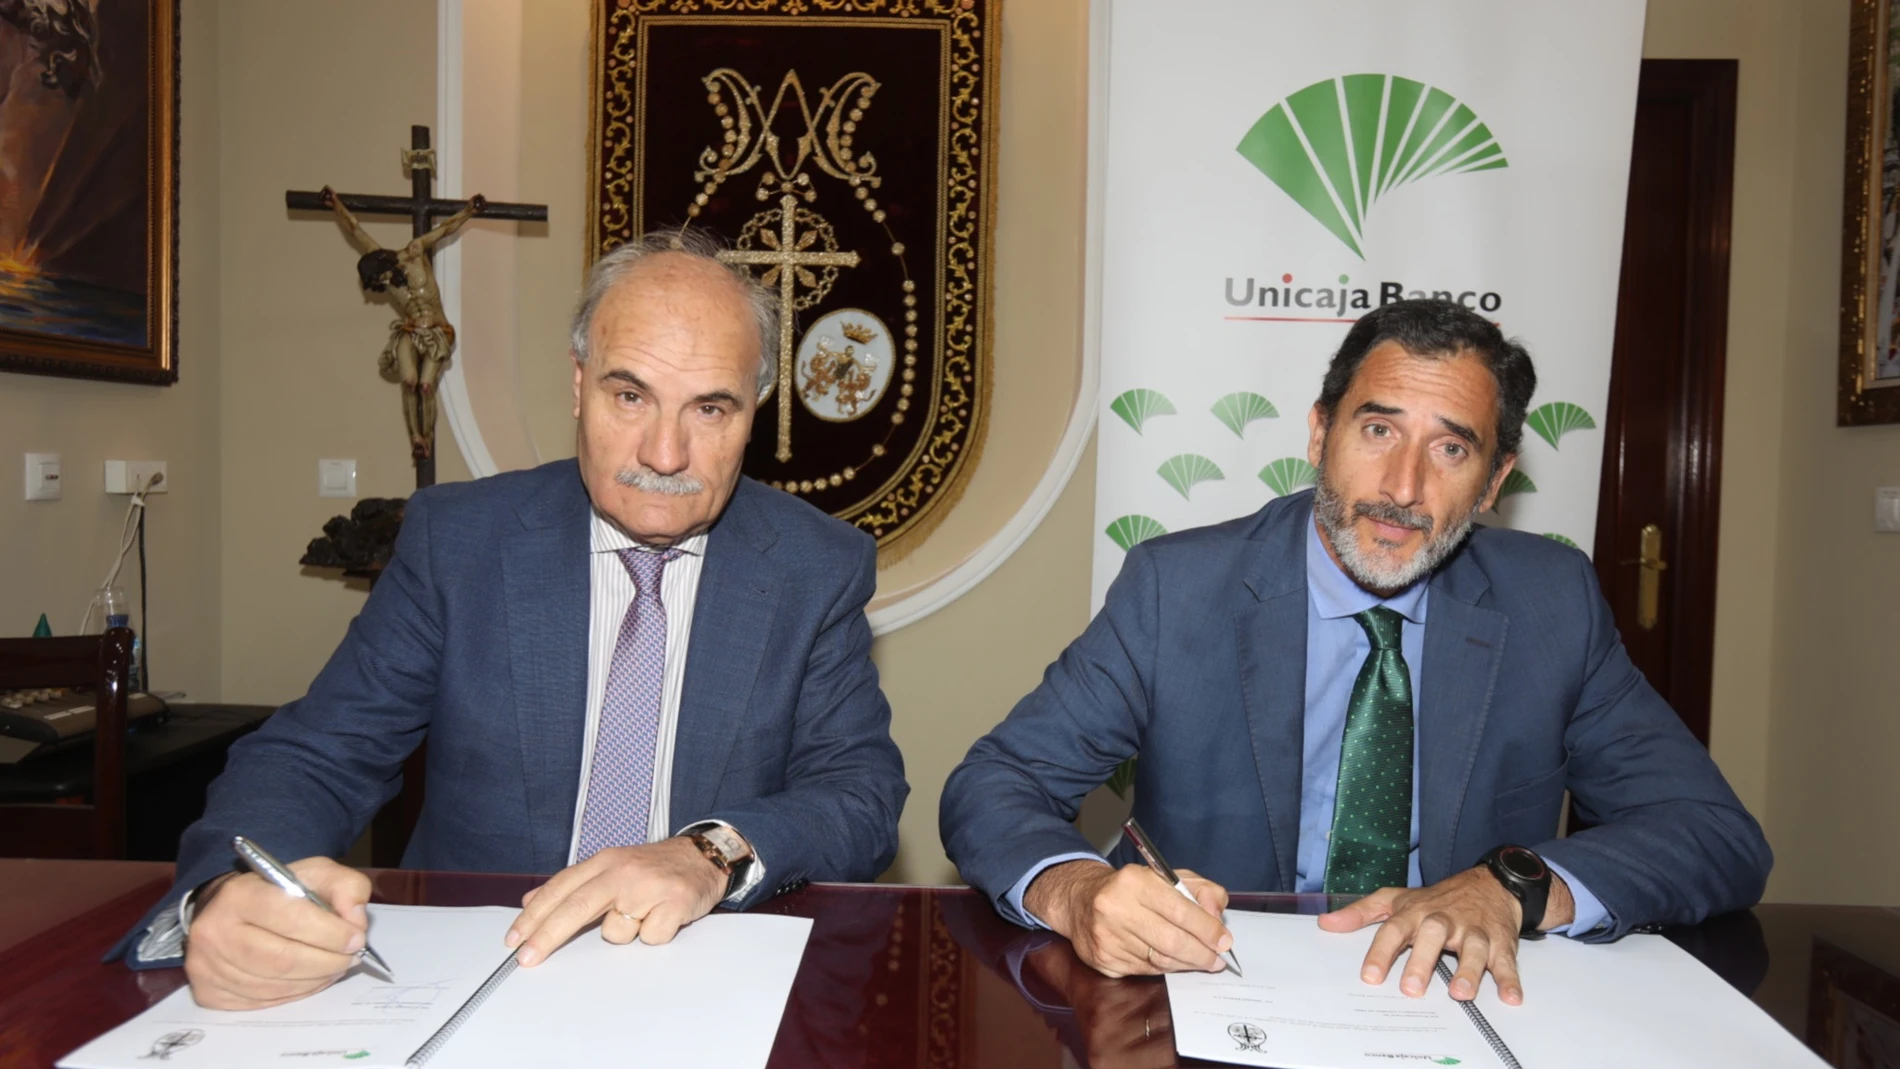 Cádiz.- Unicaja Banco firma por primera vez un convenio con el Consejo Local de Hermandades y Cofradías de Cádiz